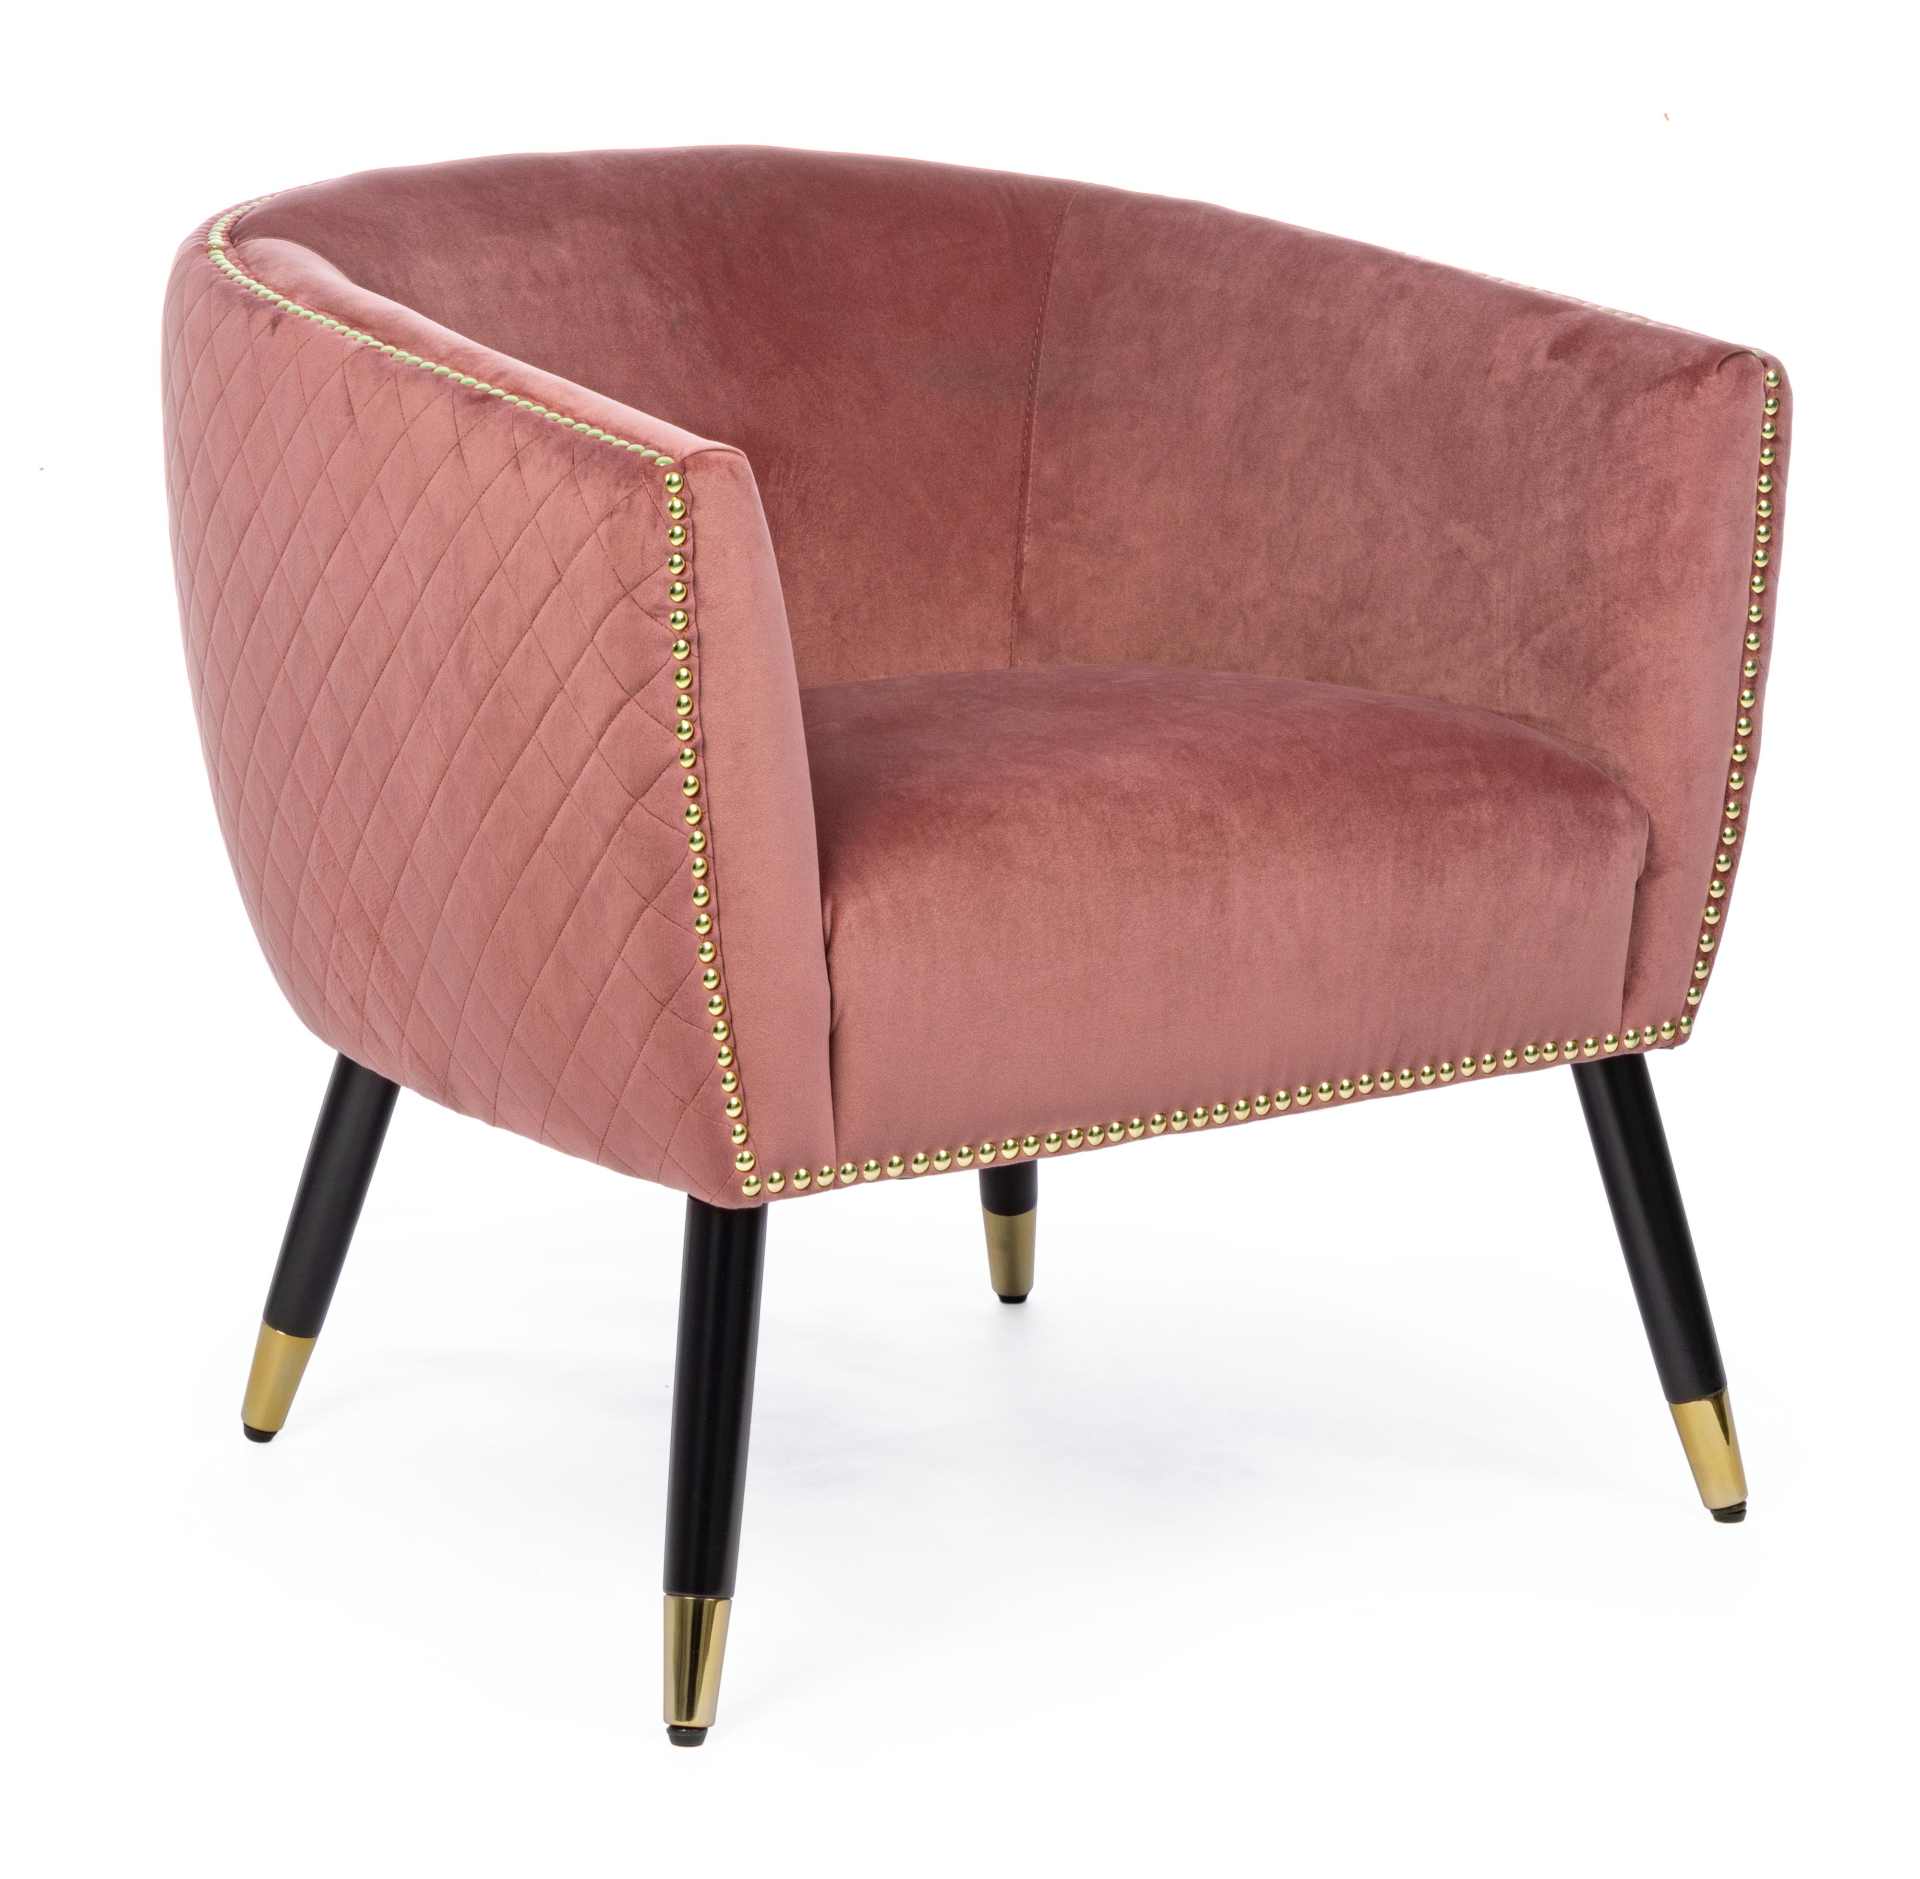 Der Sessel Caitlin überzeugt mit seinem modernen Design. Gefertigt wurde er aus Stoff in Samt-Optik, welcher einen rosa Farbton besitzt. Das Gestell ist aus Kautschukholz und hat eine schwarze Farbe. Der Sessel besitzt eine Sitzhöhe von 45 cm. Die Breite 